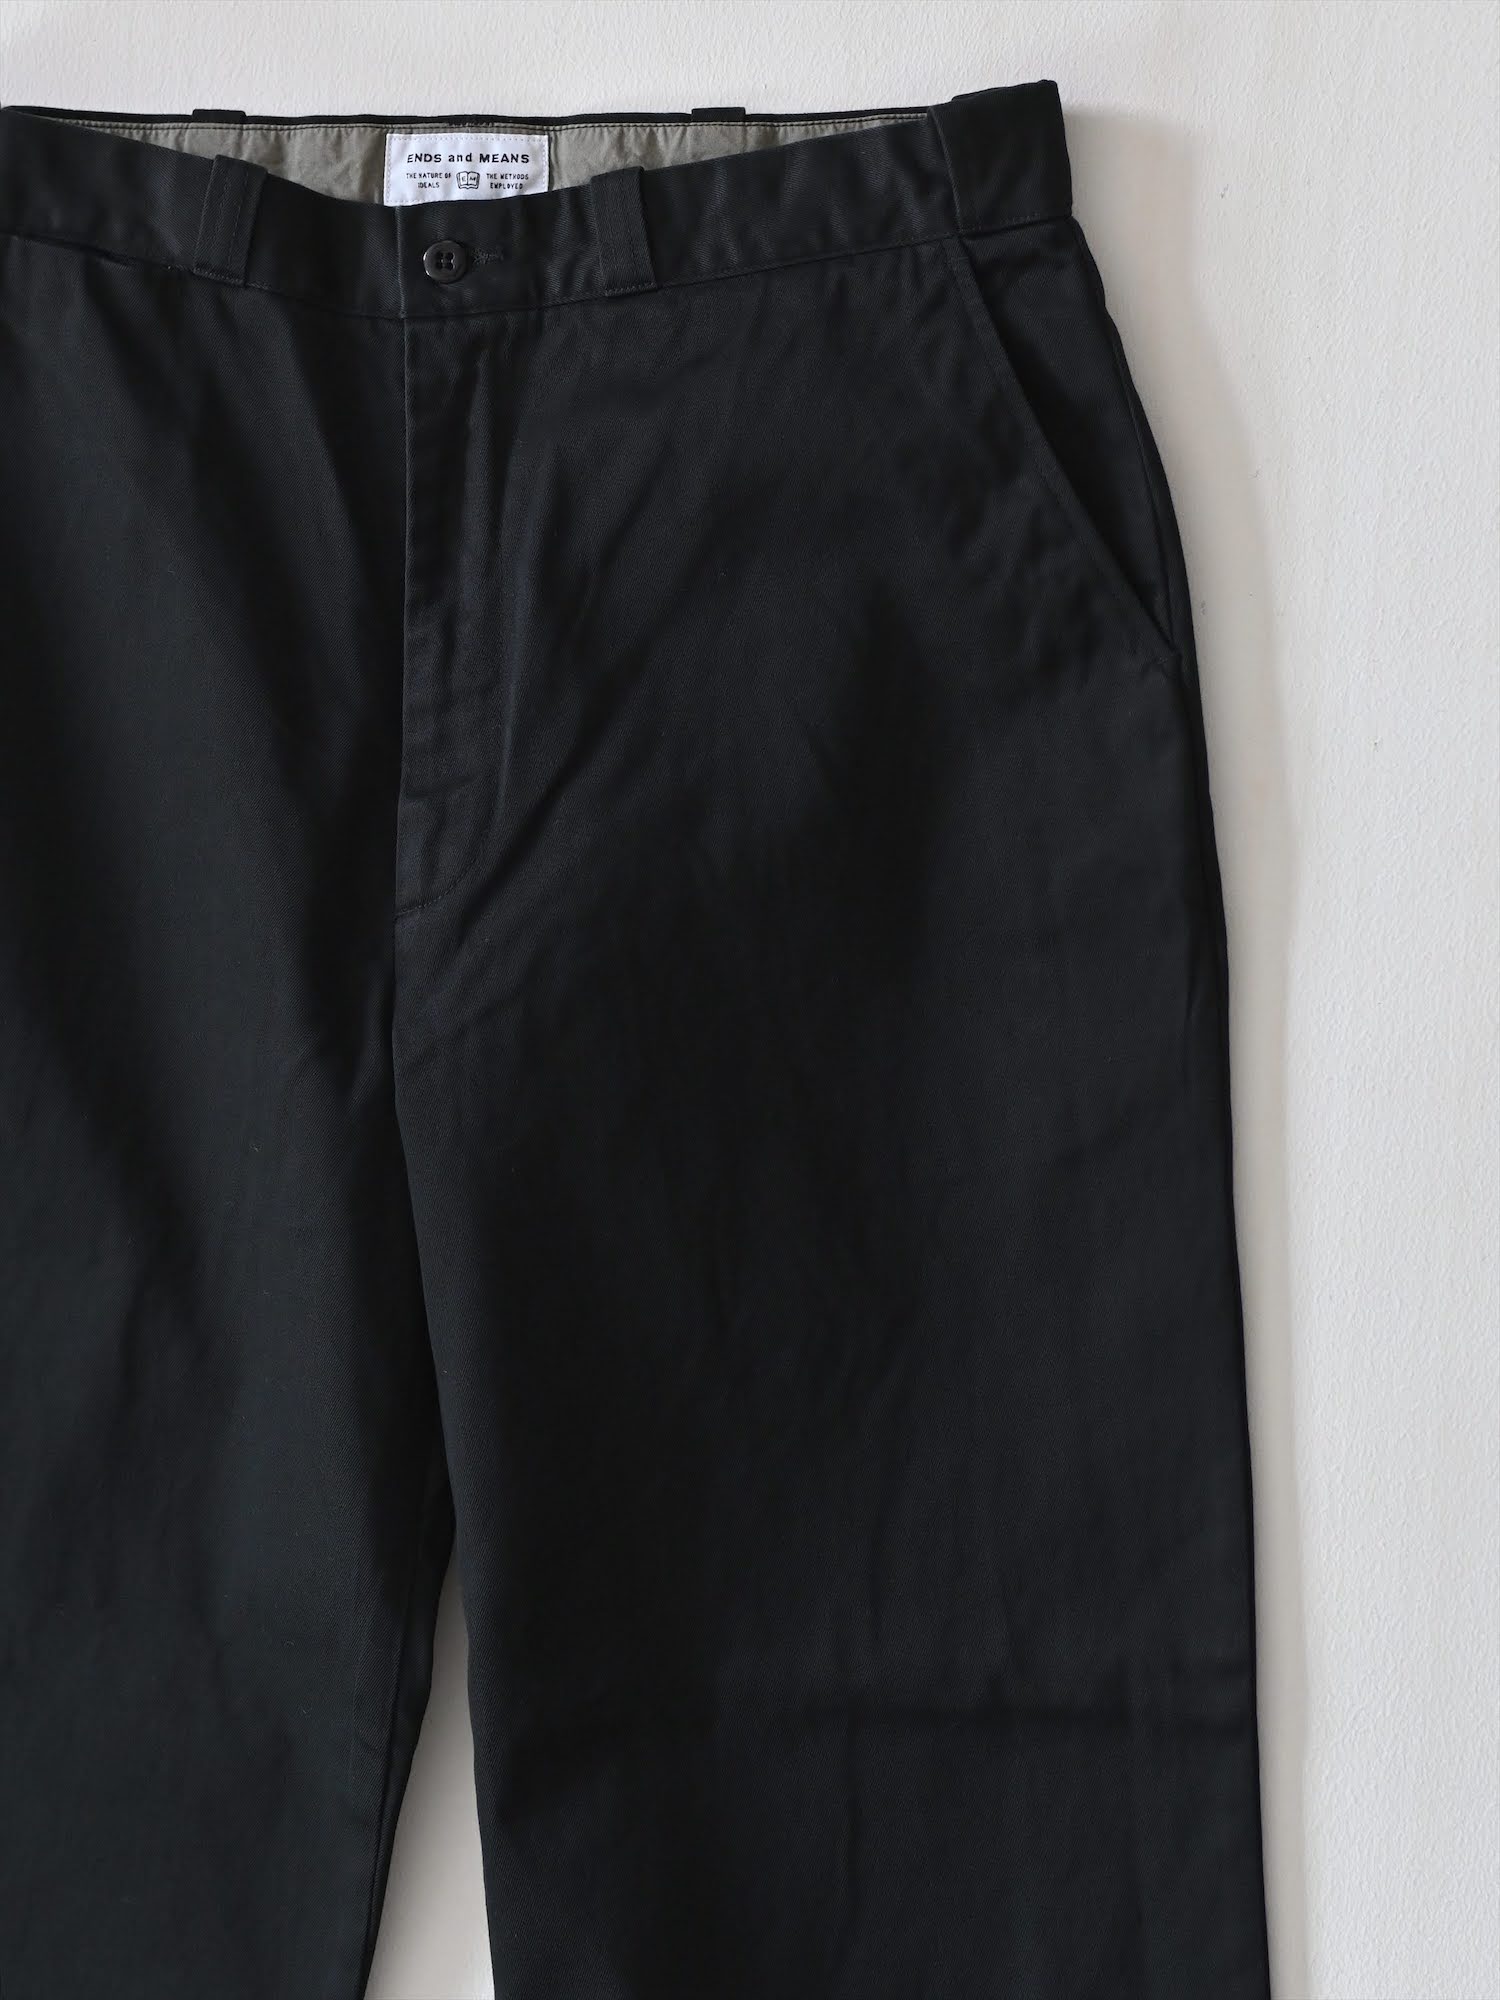 Work Chino Pants black / pand catalogue